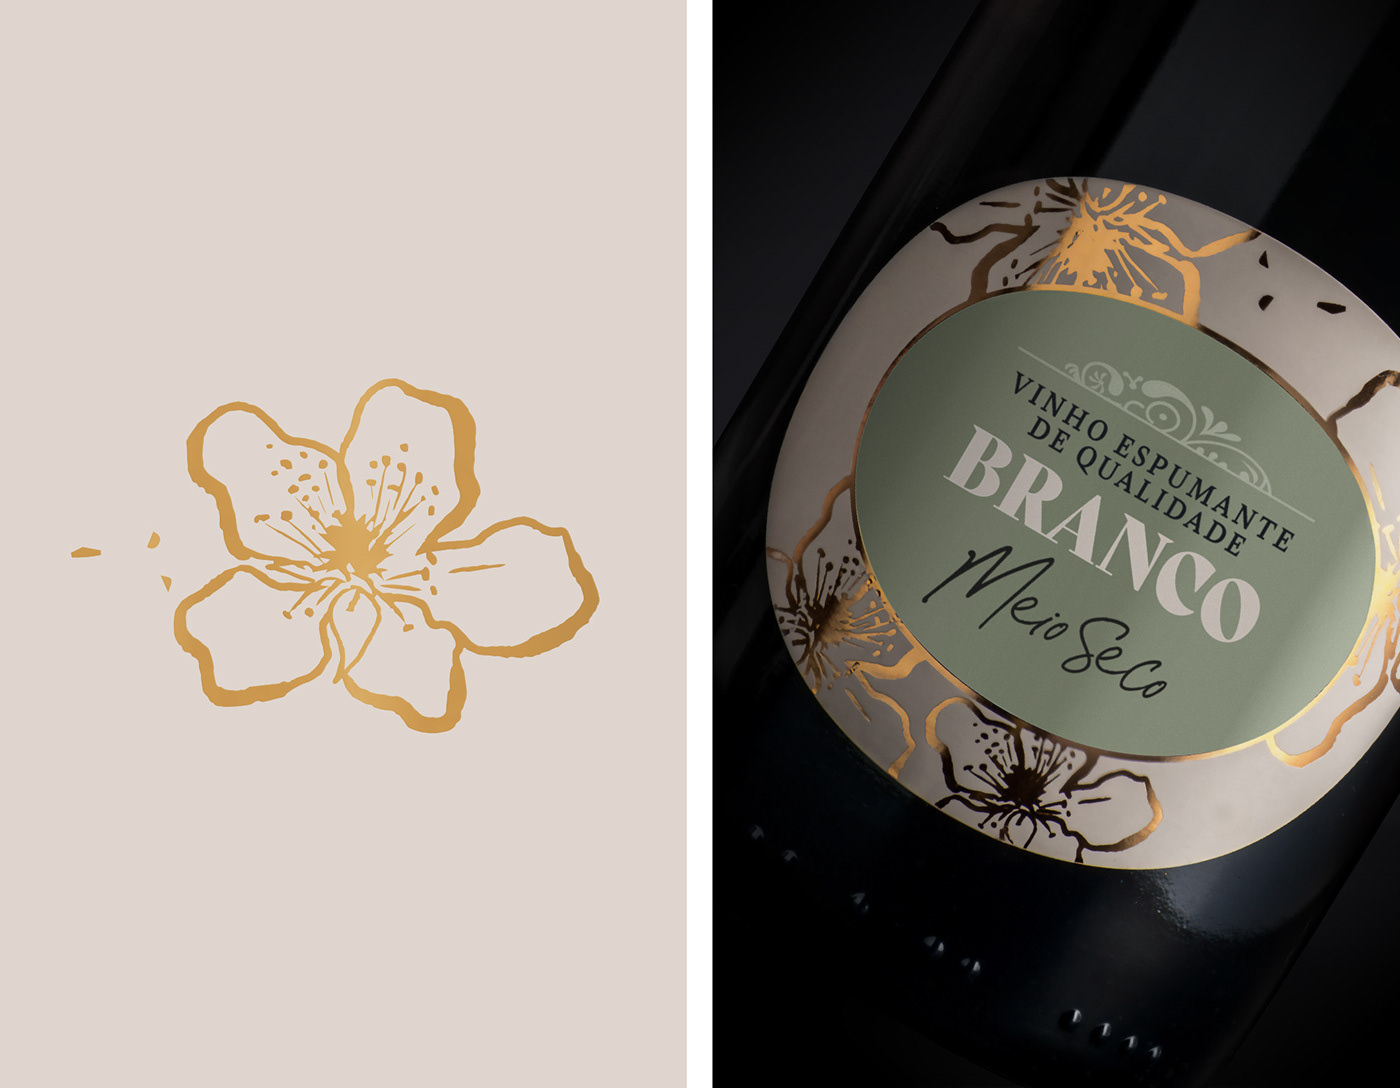 Ana Clemente Design intermarché packaging design Selecção de Enófilos wine